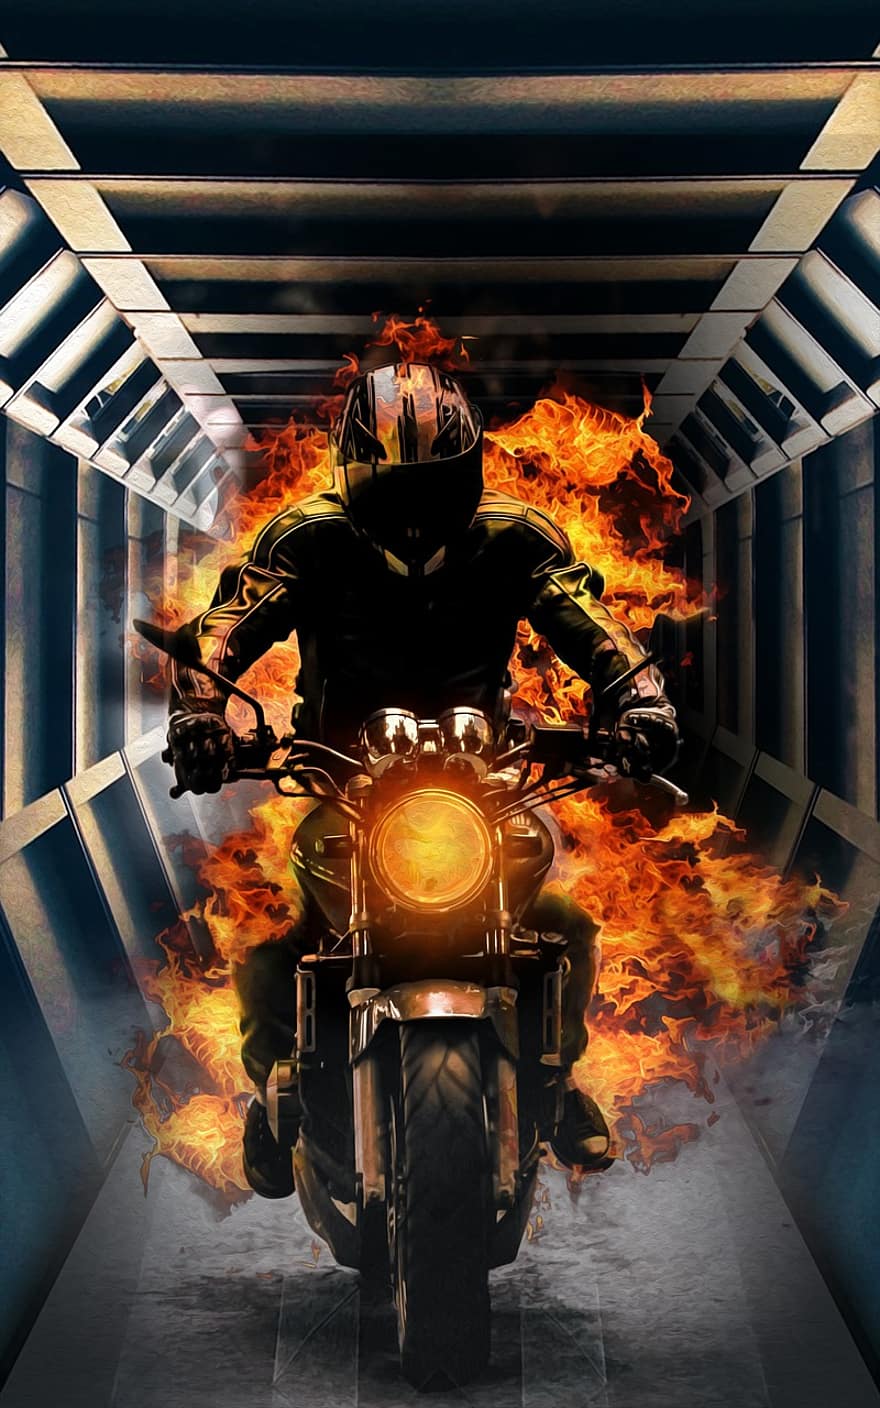 Tunnel, Biker, Feuer, Motorrad, Flamme, Armageddon, Reiten, Geschwindigkeit, Dämon, Hölle, Höllenfeuer